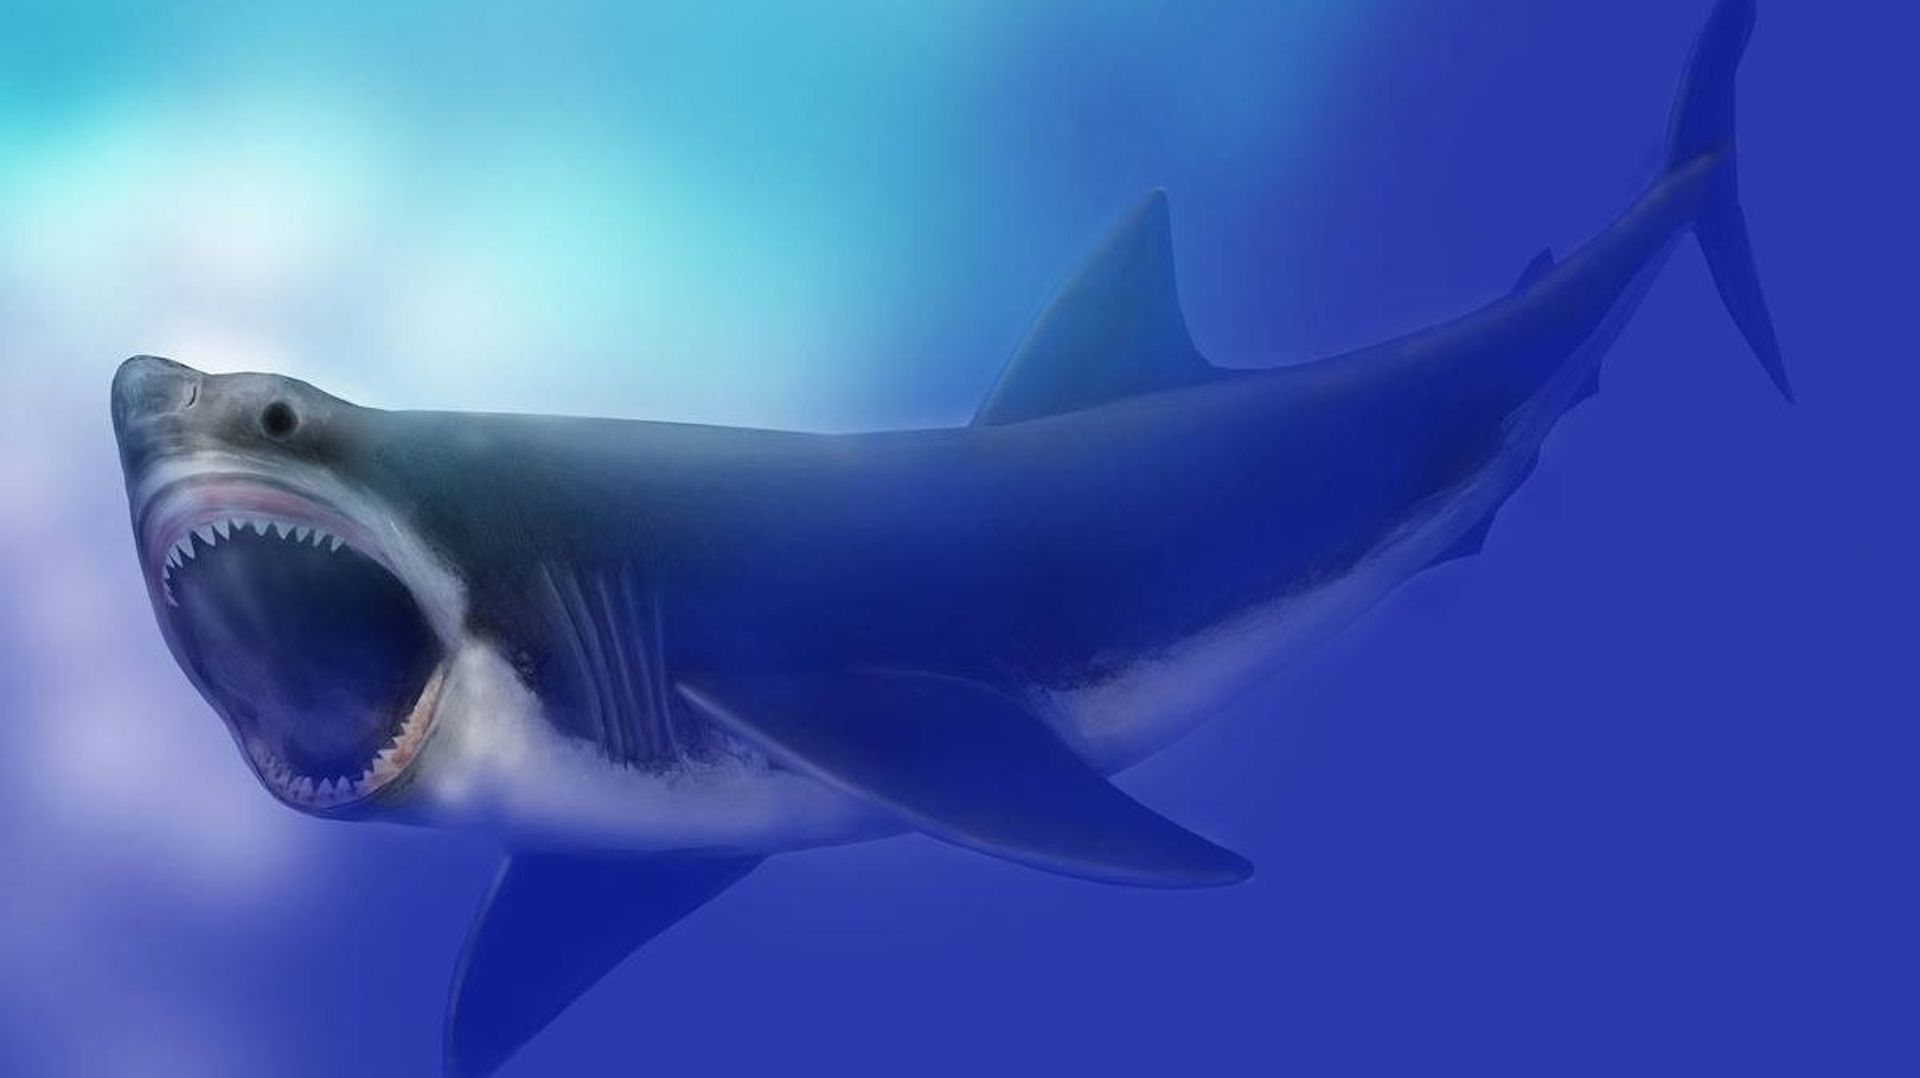 Le mégalodon, requin géant, a été victime de la première extinction de masse liée... aux glaciers